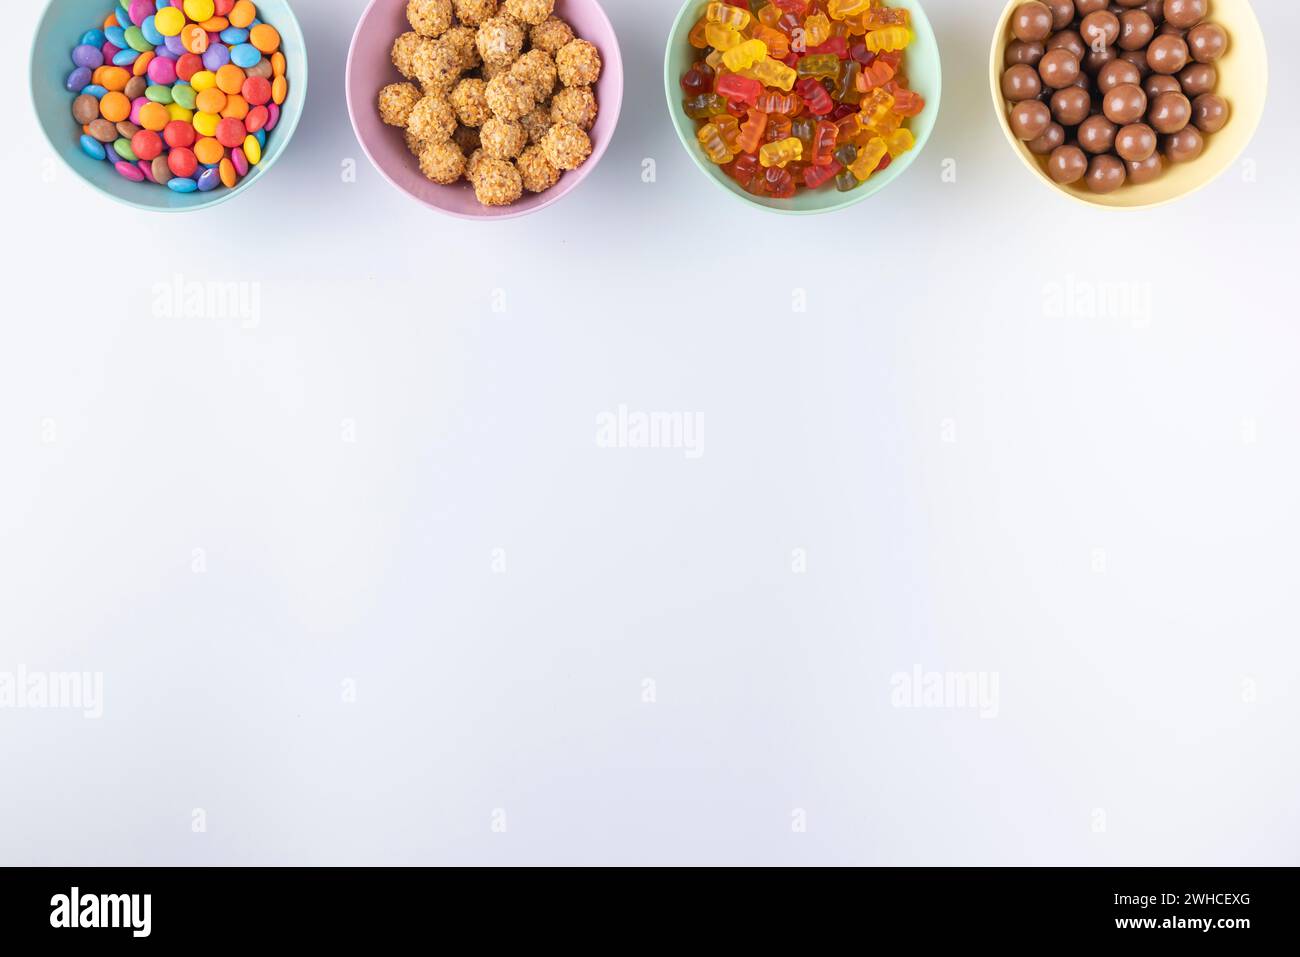 Bols de bonbons colorés sur un fond clair, disposés au bord de l'image Banque D'Images